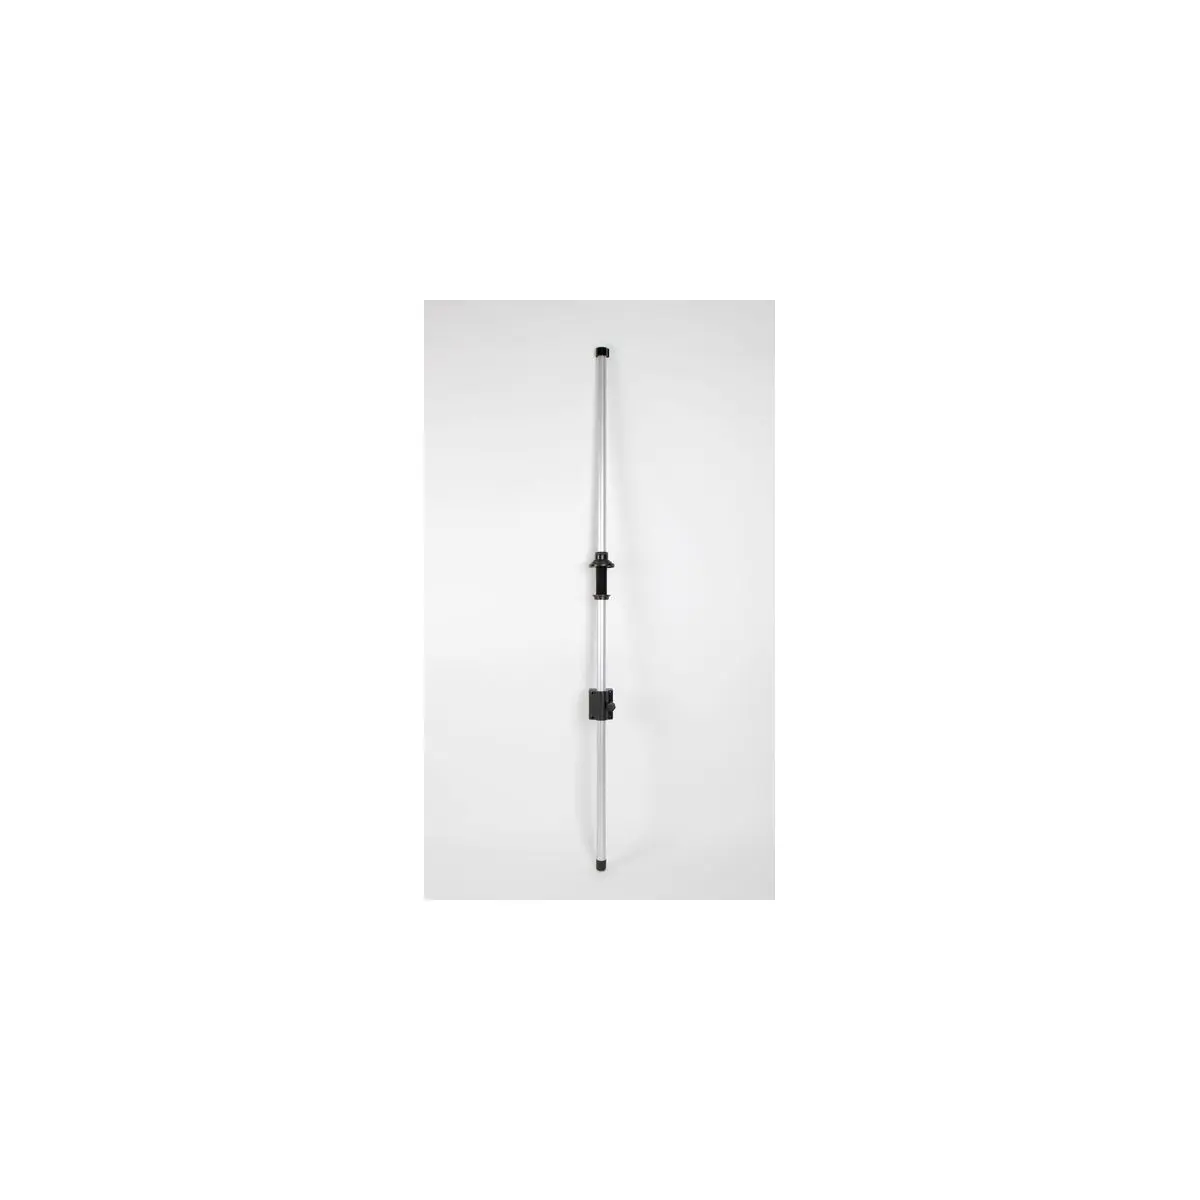 Teleskopický anténny stožiar Carbest pre televízne antény - 150 cm